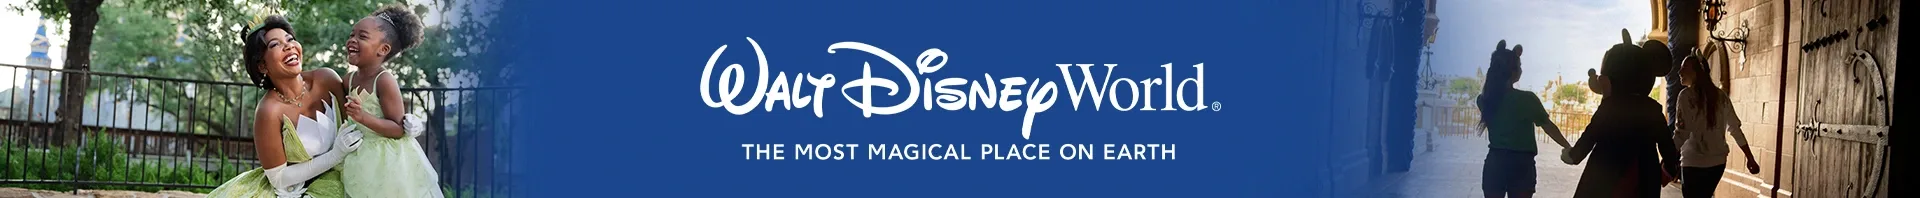 Walt Disney World Banner